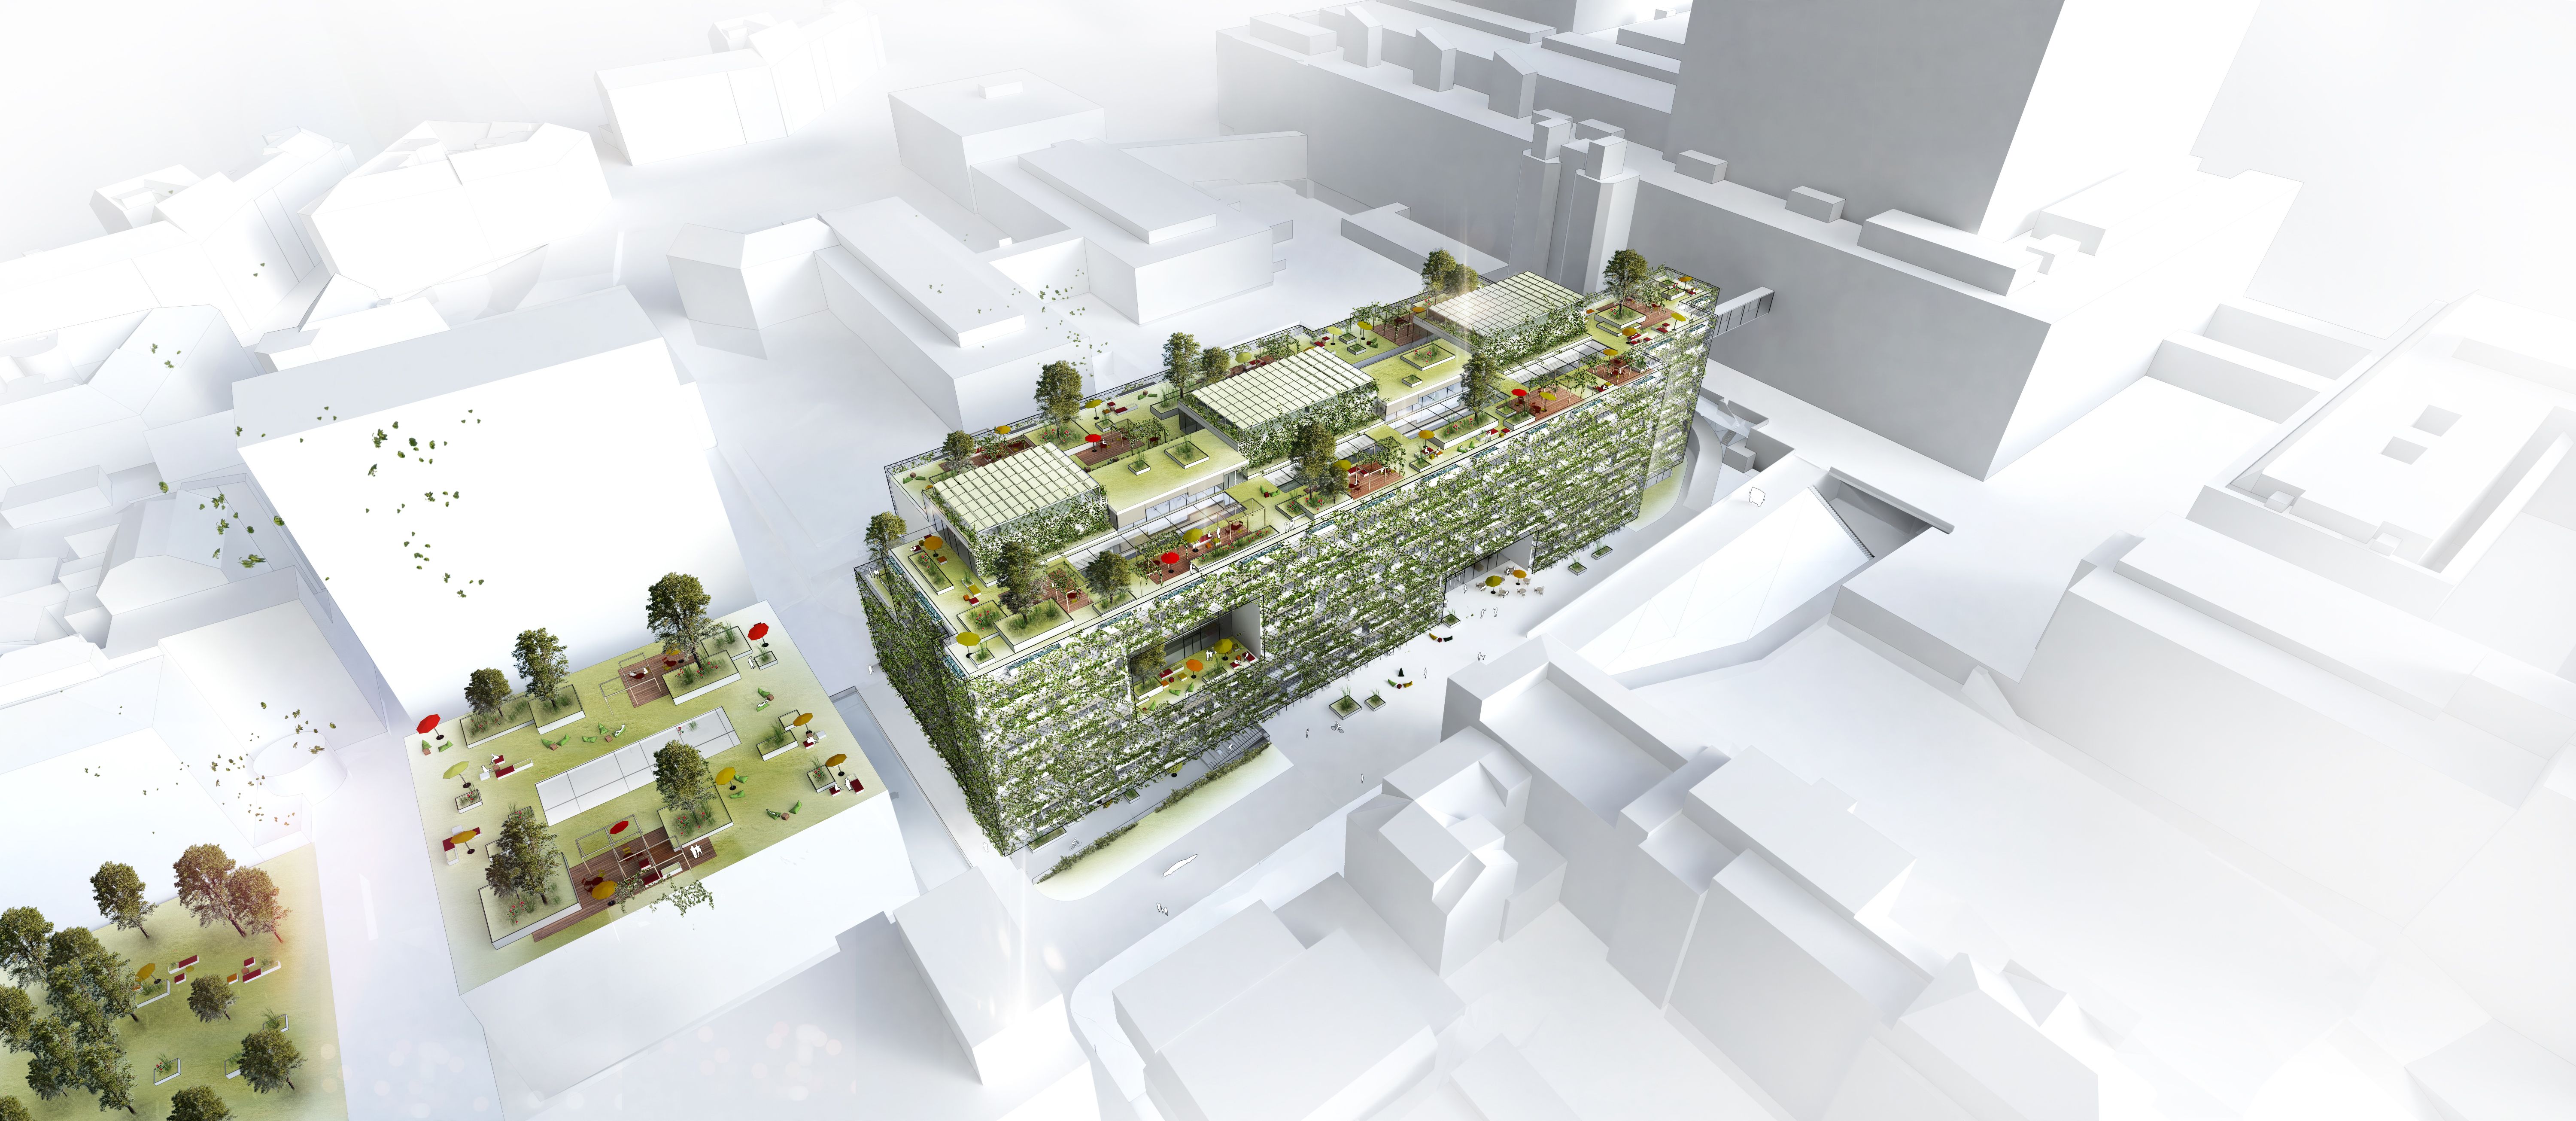 Visualisierung gesamtes Gebäude Vogelperspektive, viel grün, Pflanzen